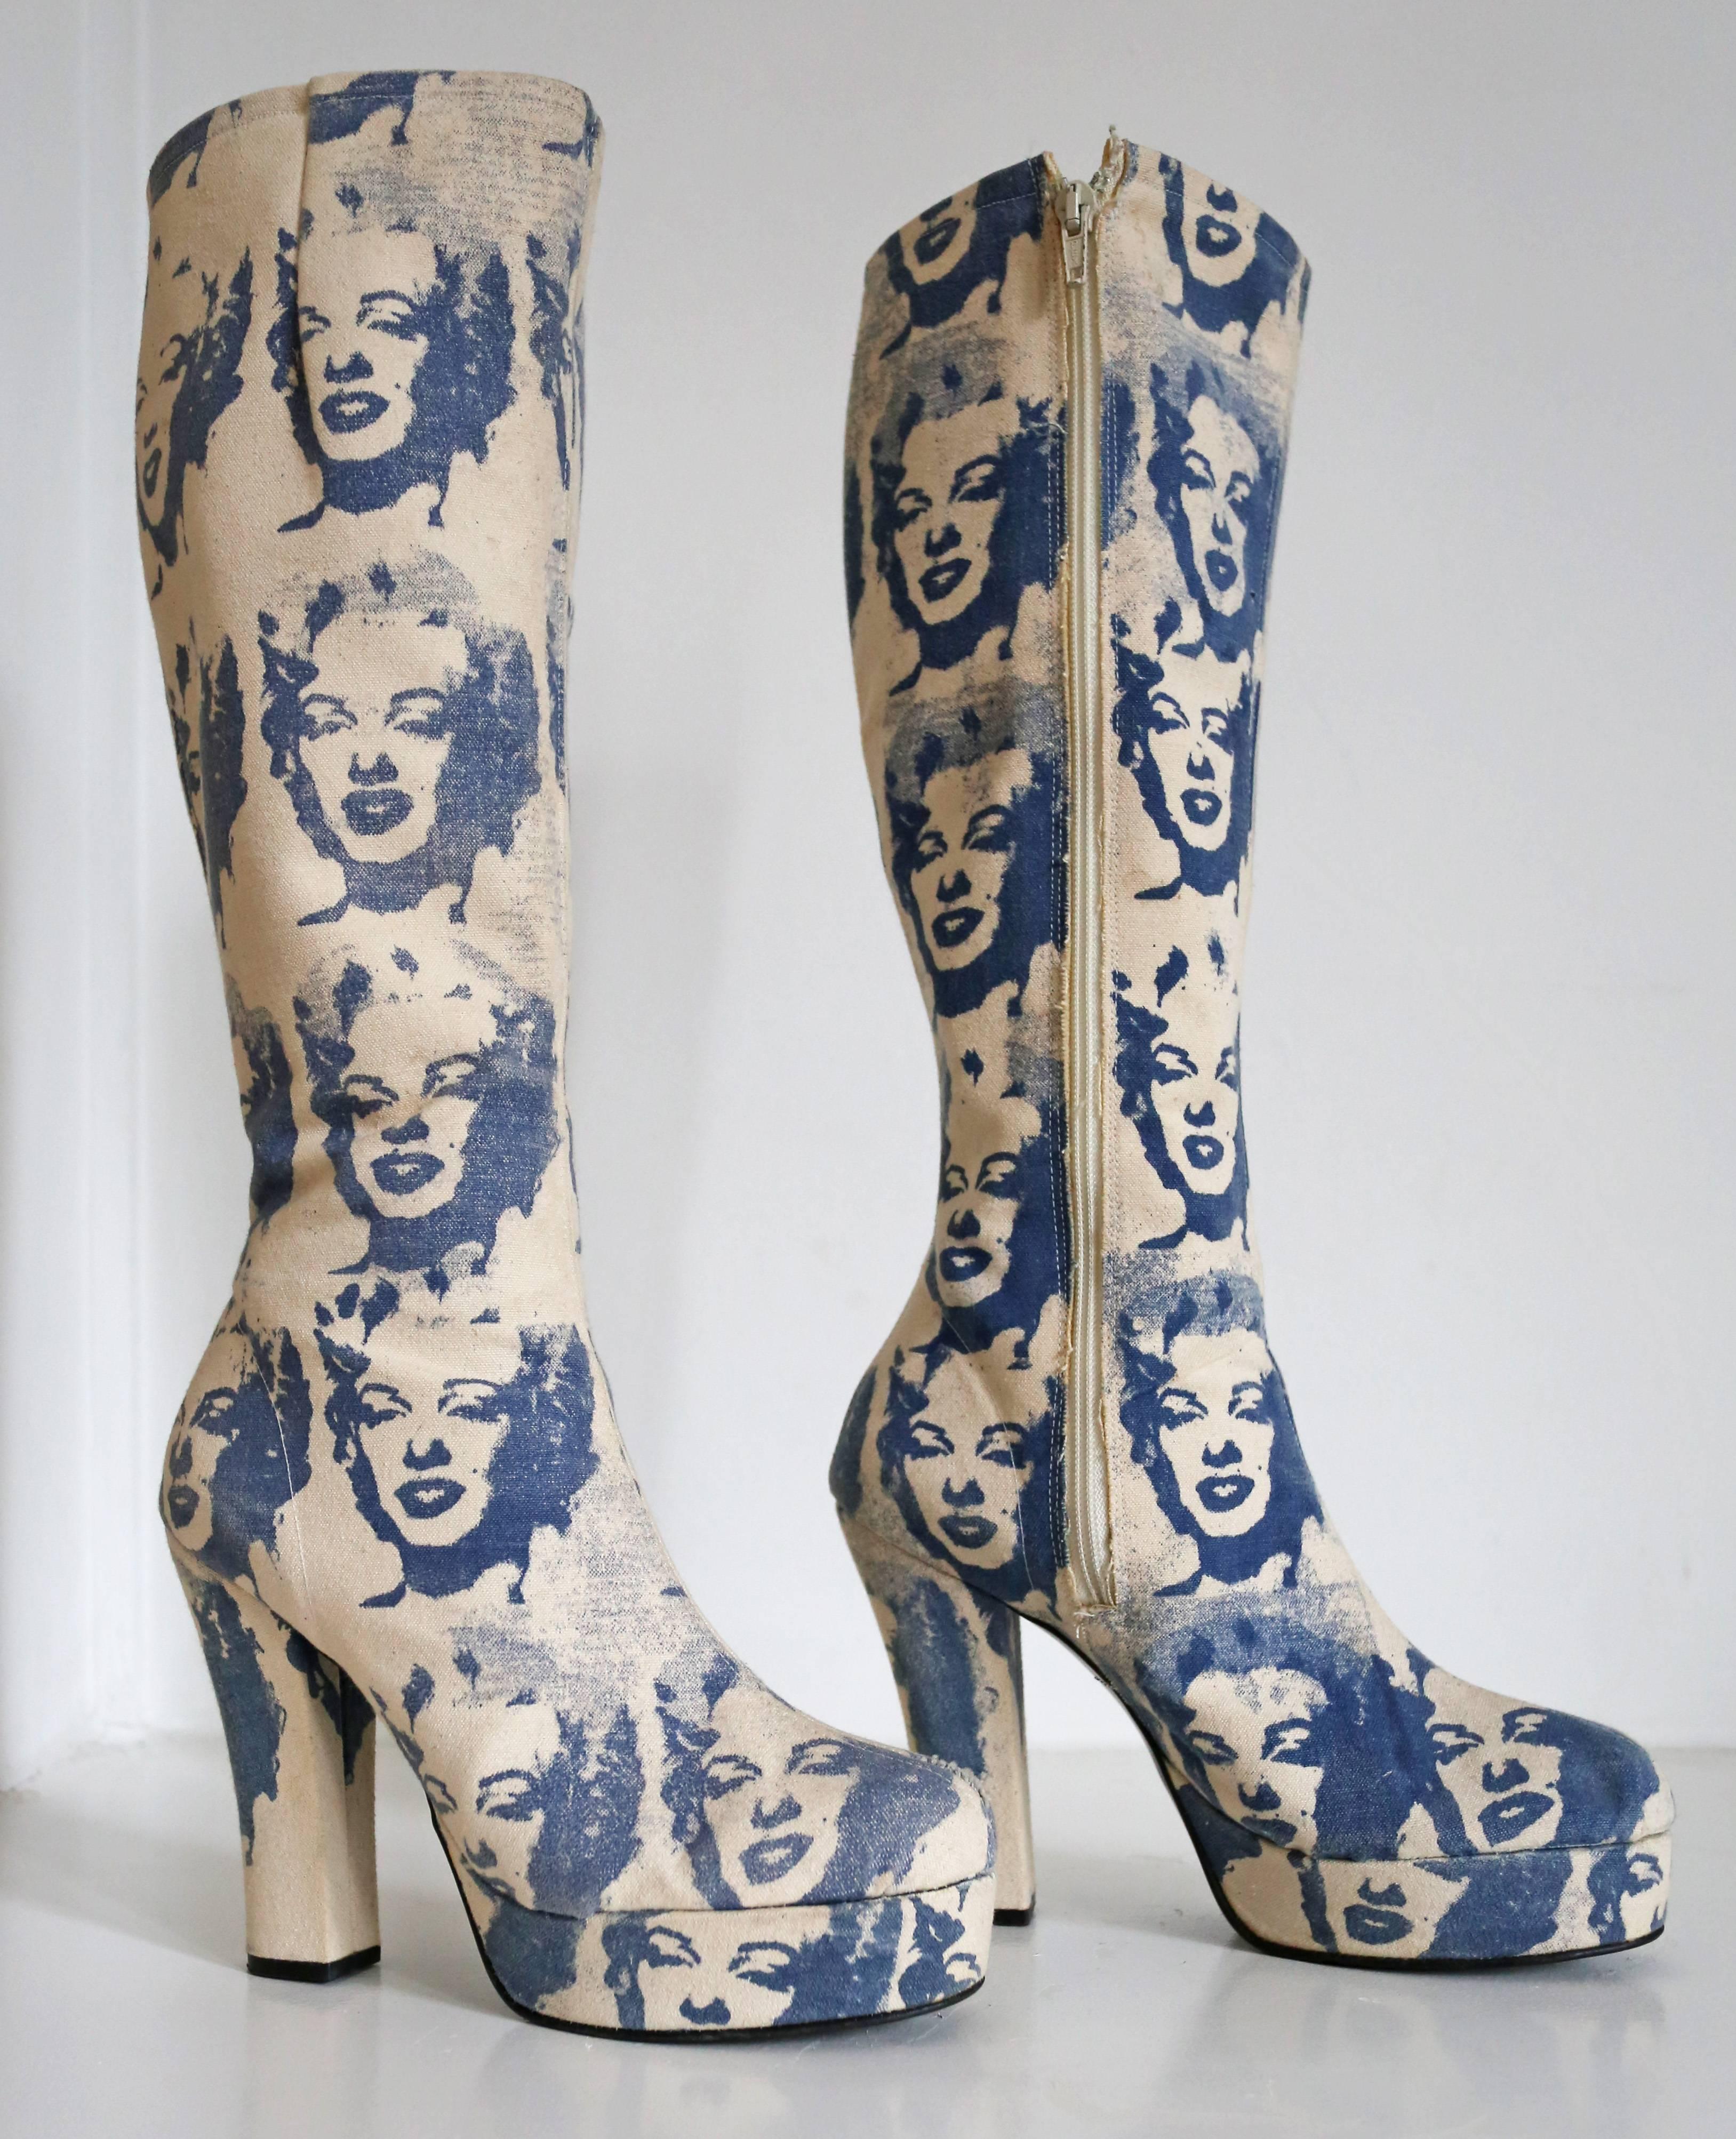 Nous vous présentons une paire originale de bottes à plateforme en toile des années 1960, ornées de l'œuvre d'art sérigraphiée emblématique 